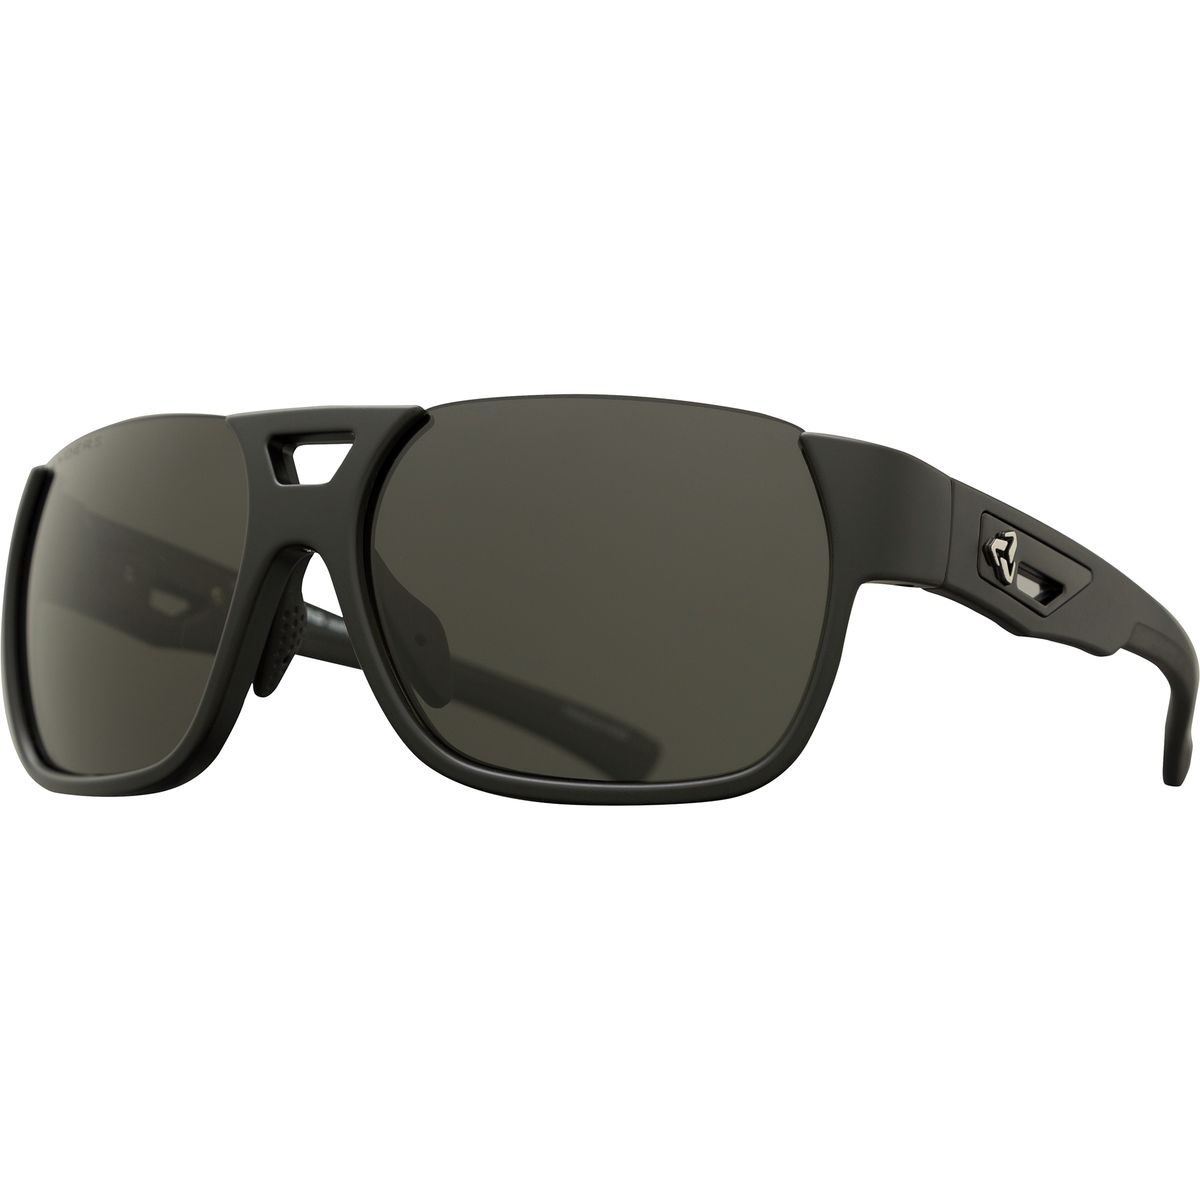 Ryders Eyewear Rotor Sunglasses Polarized Men's